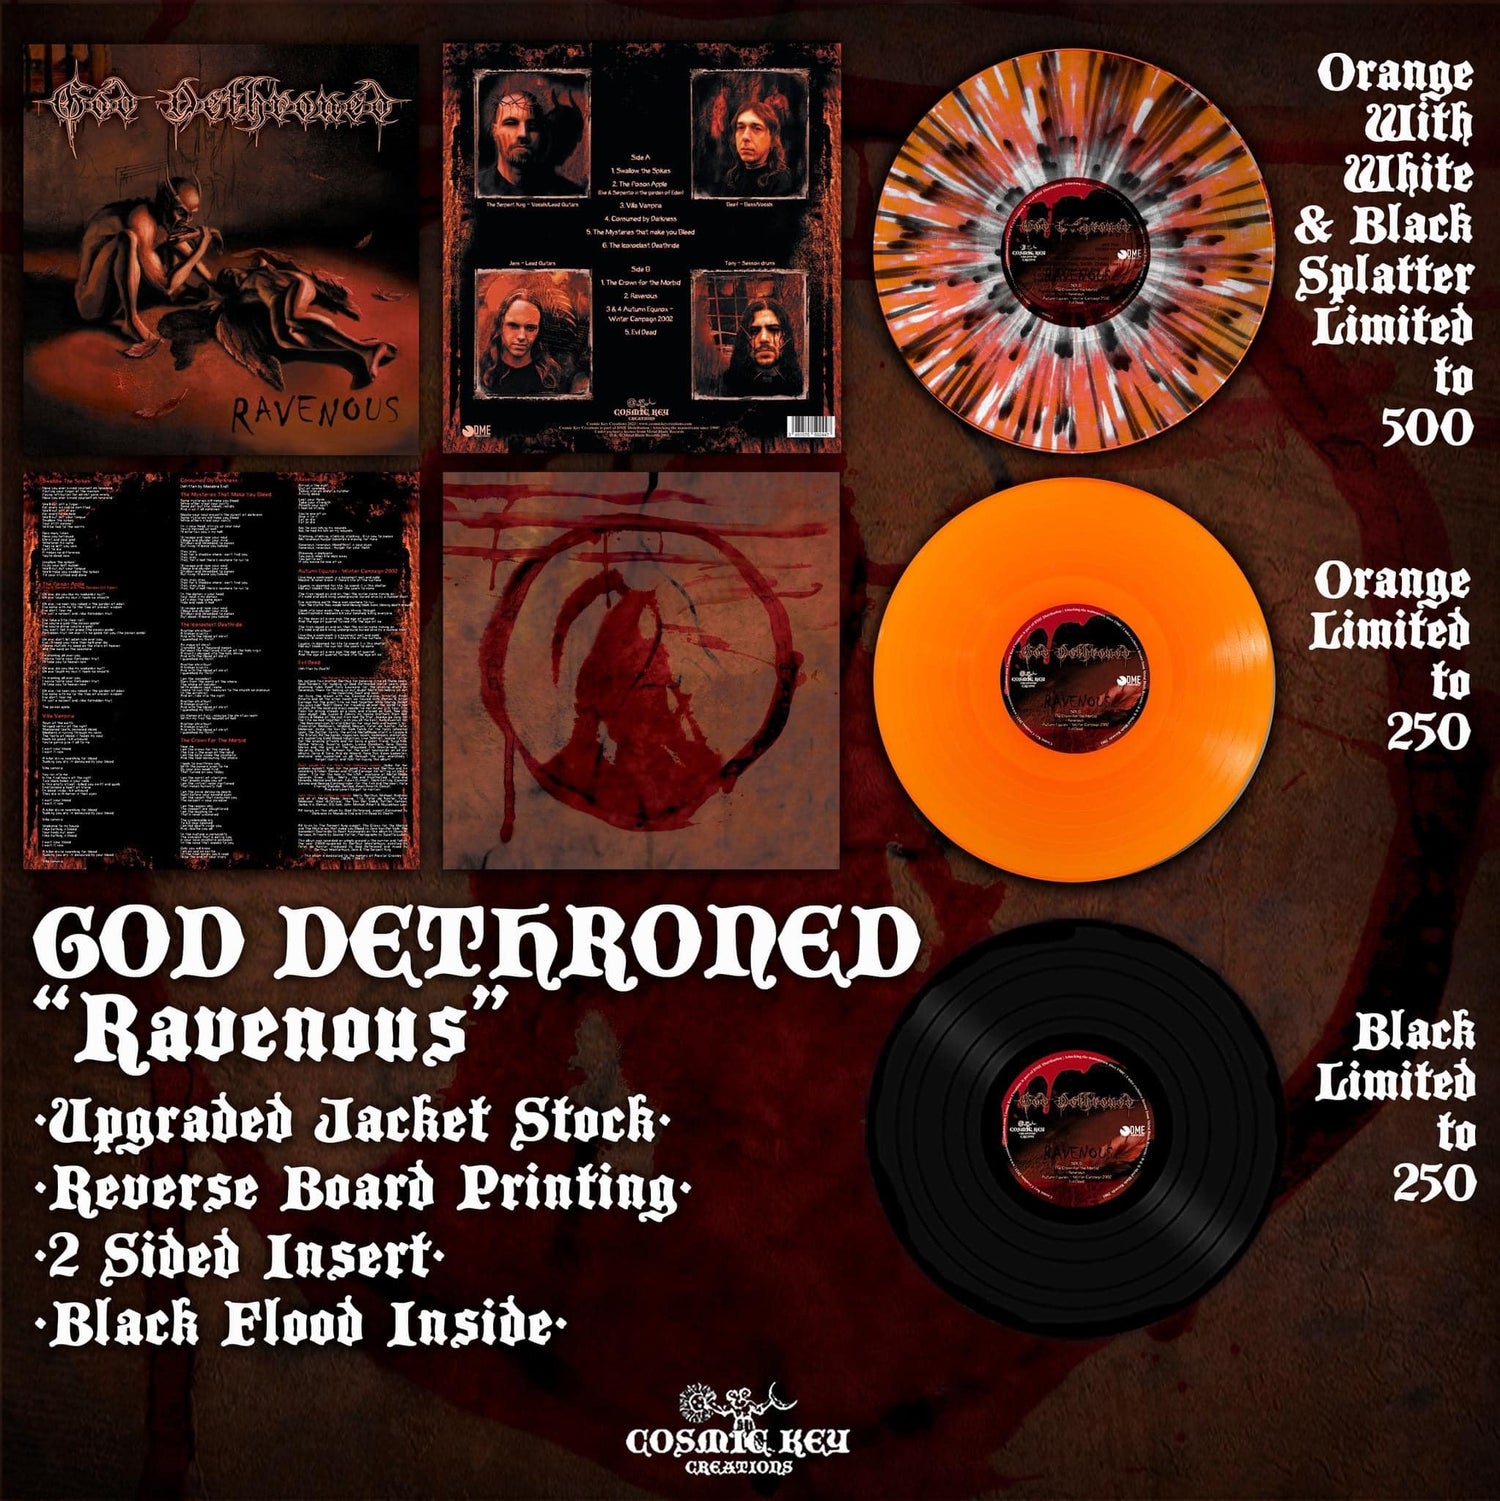 Ravenous album cover by God Dethroned